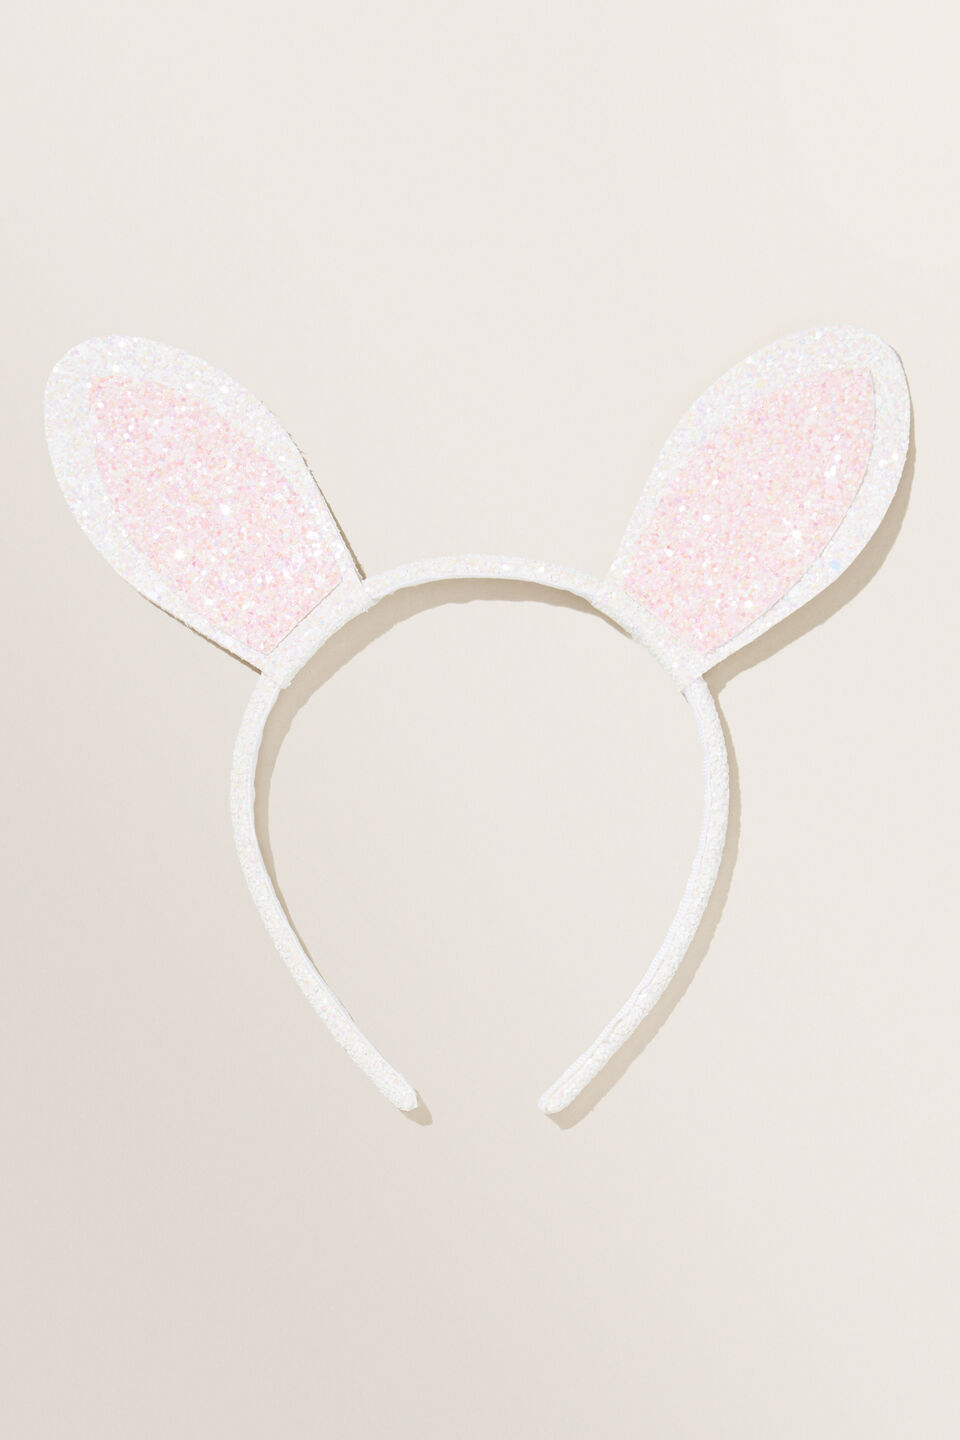 Glitter Bunny Ears  Multi